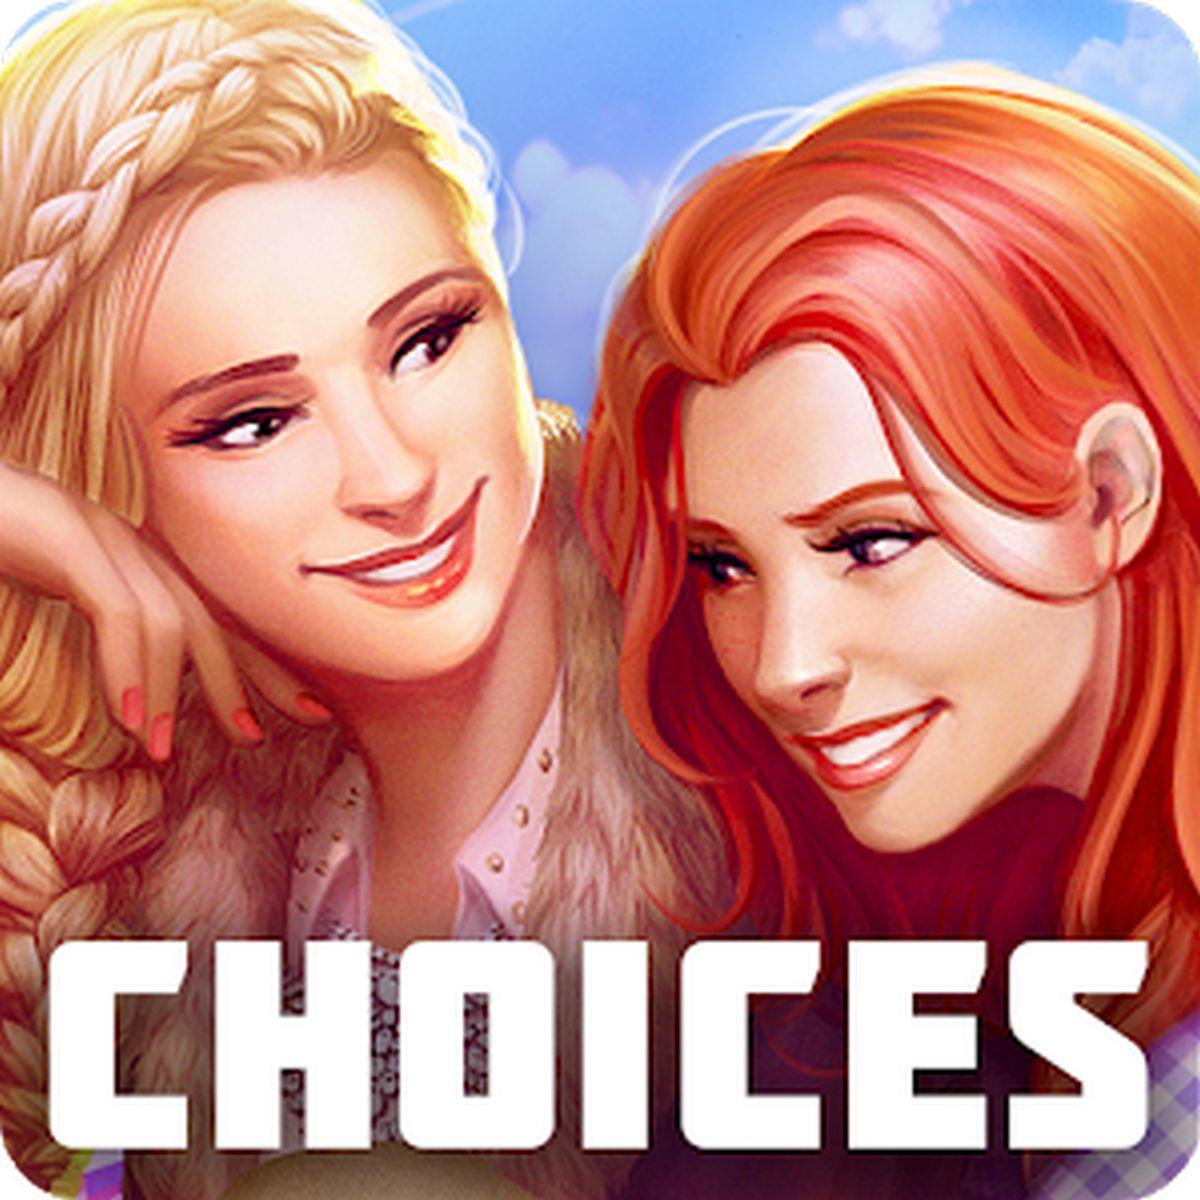 Choices: Stories You Play APK MOD v2.7.9 (Premium)